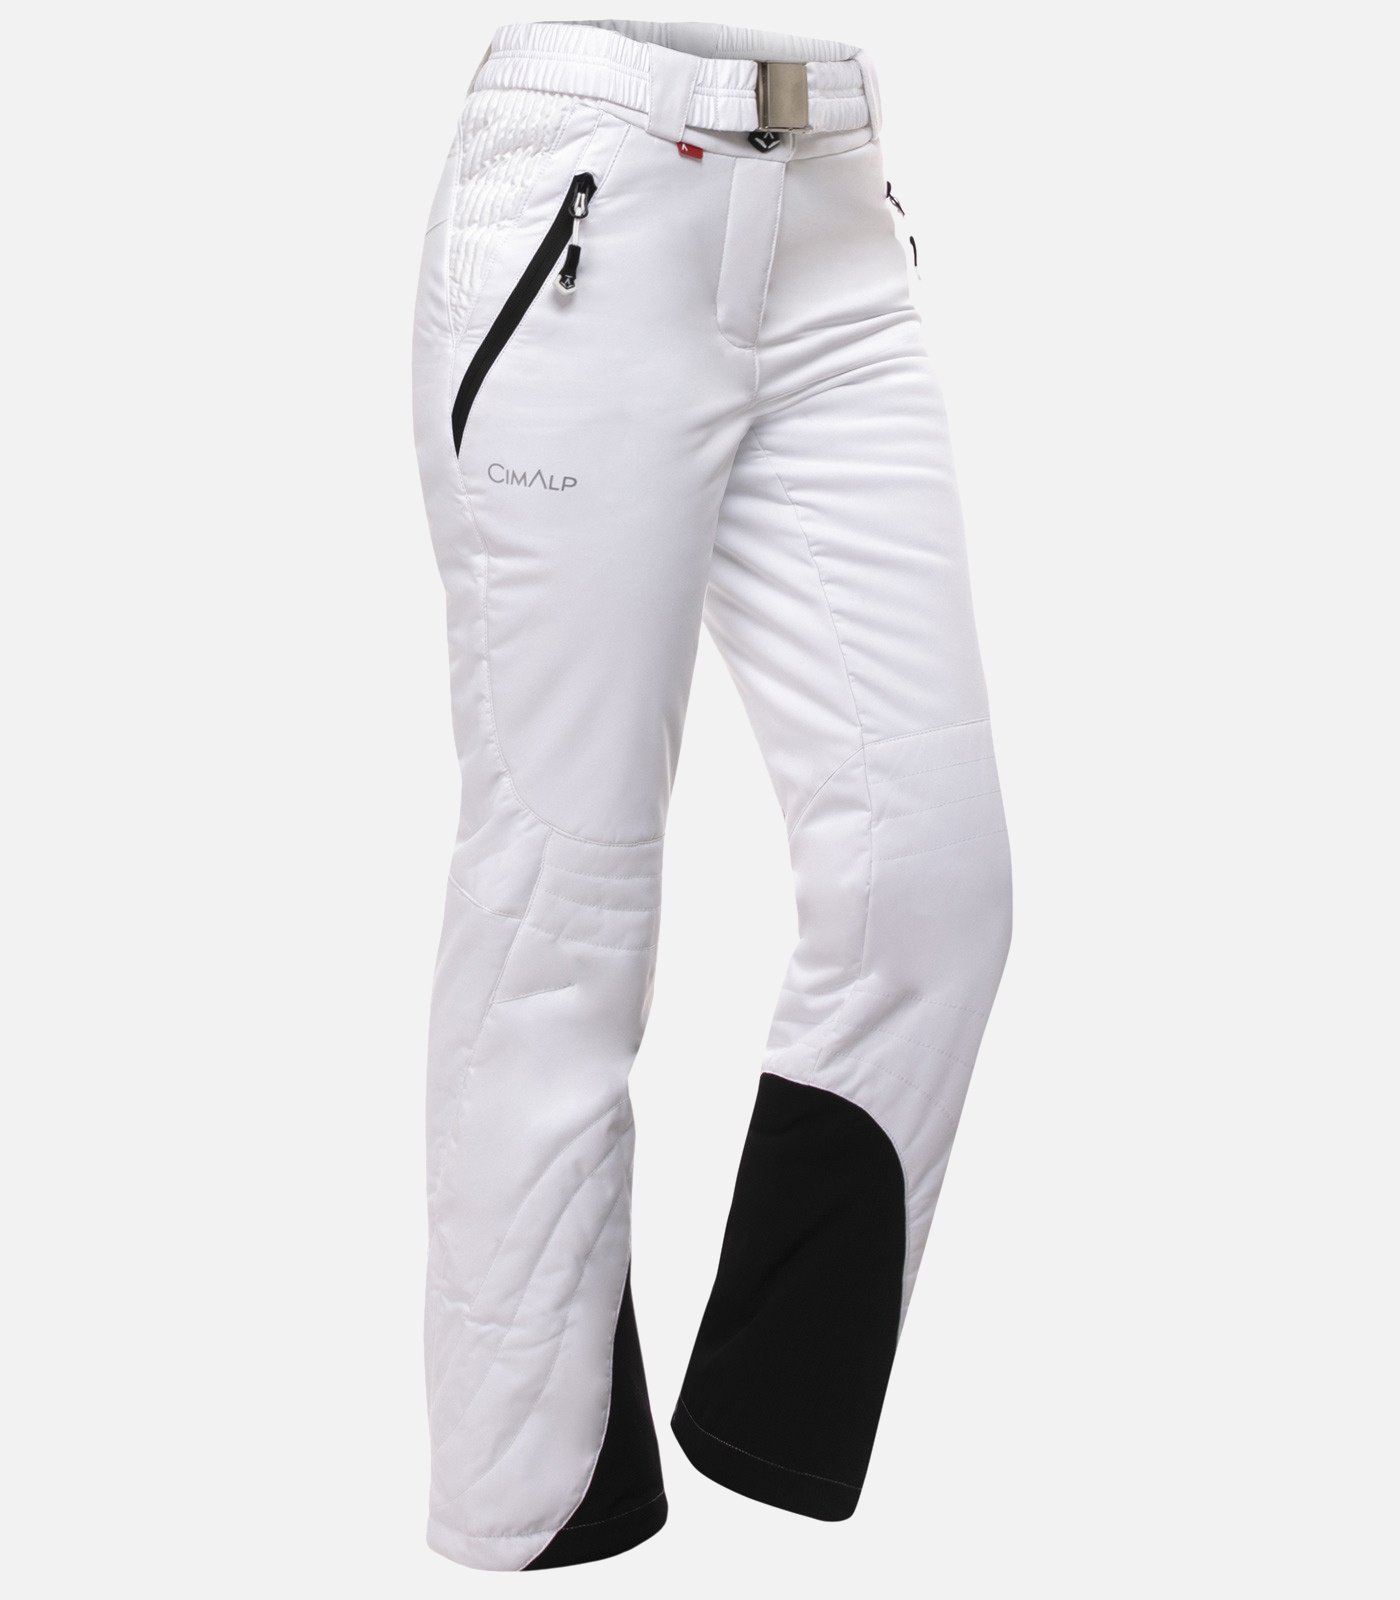 Pink Ski trousers Off  White  et un bermuda bleu jean  IetpShops Morocco